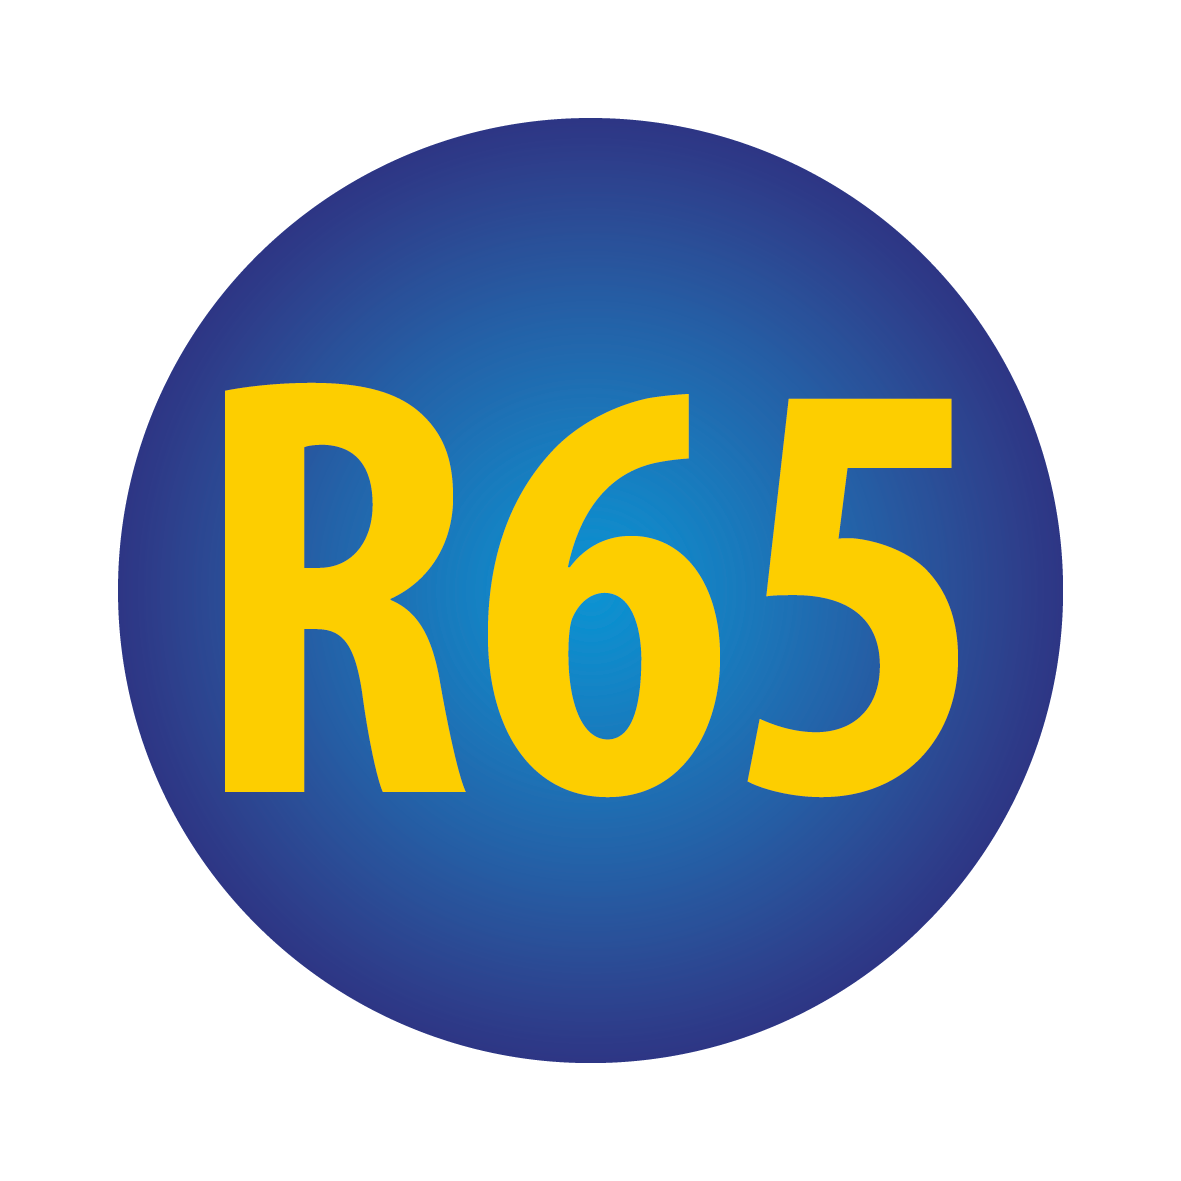 R65